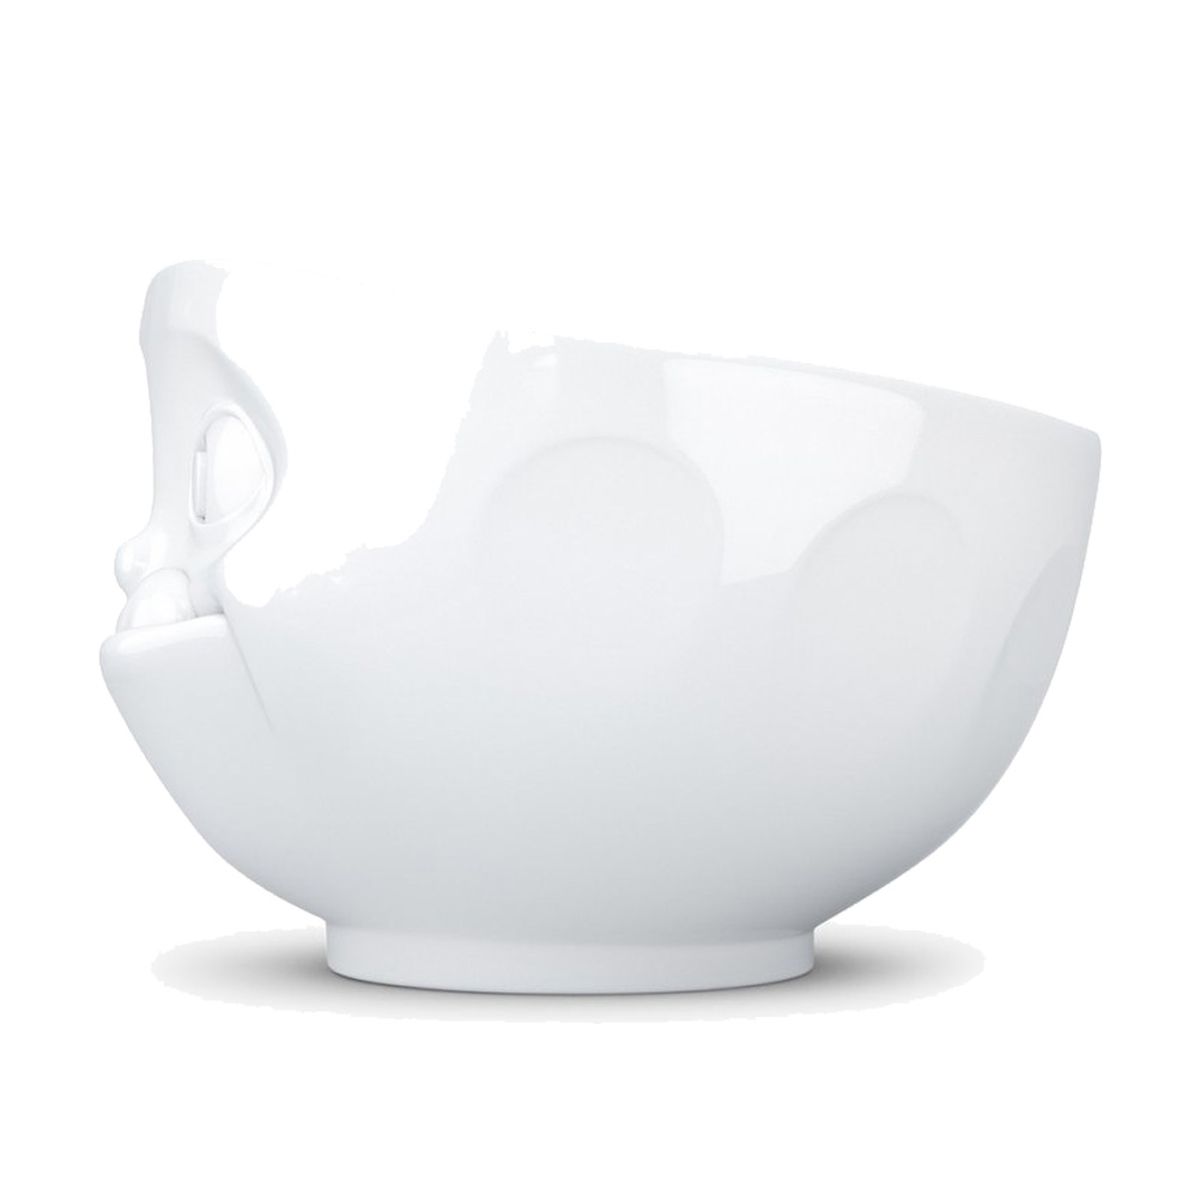 Large white porcelain bowl Tassen 500 ml - Gourmet